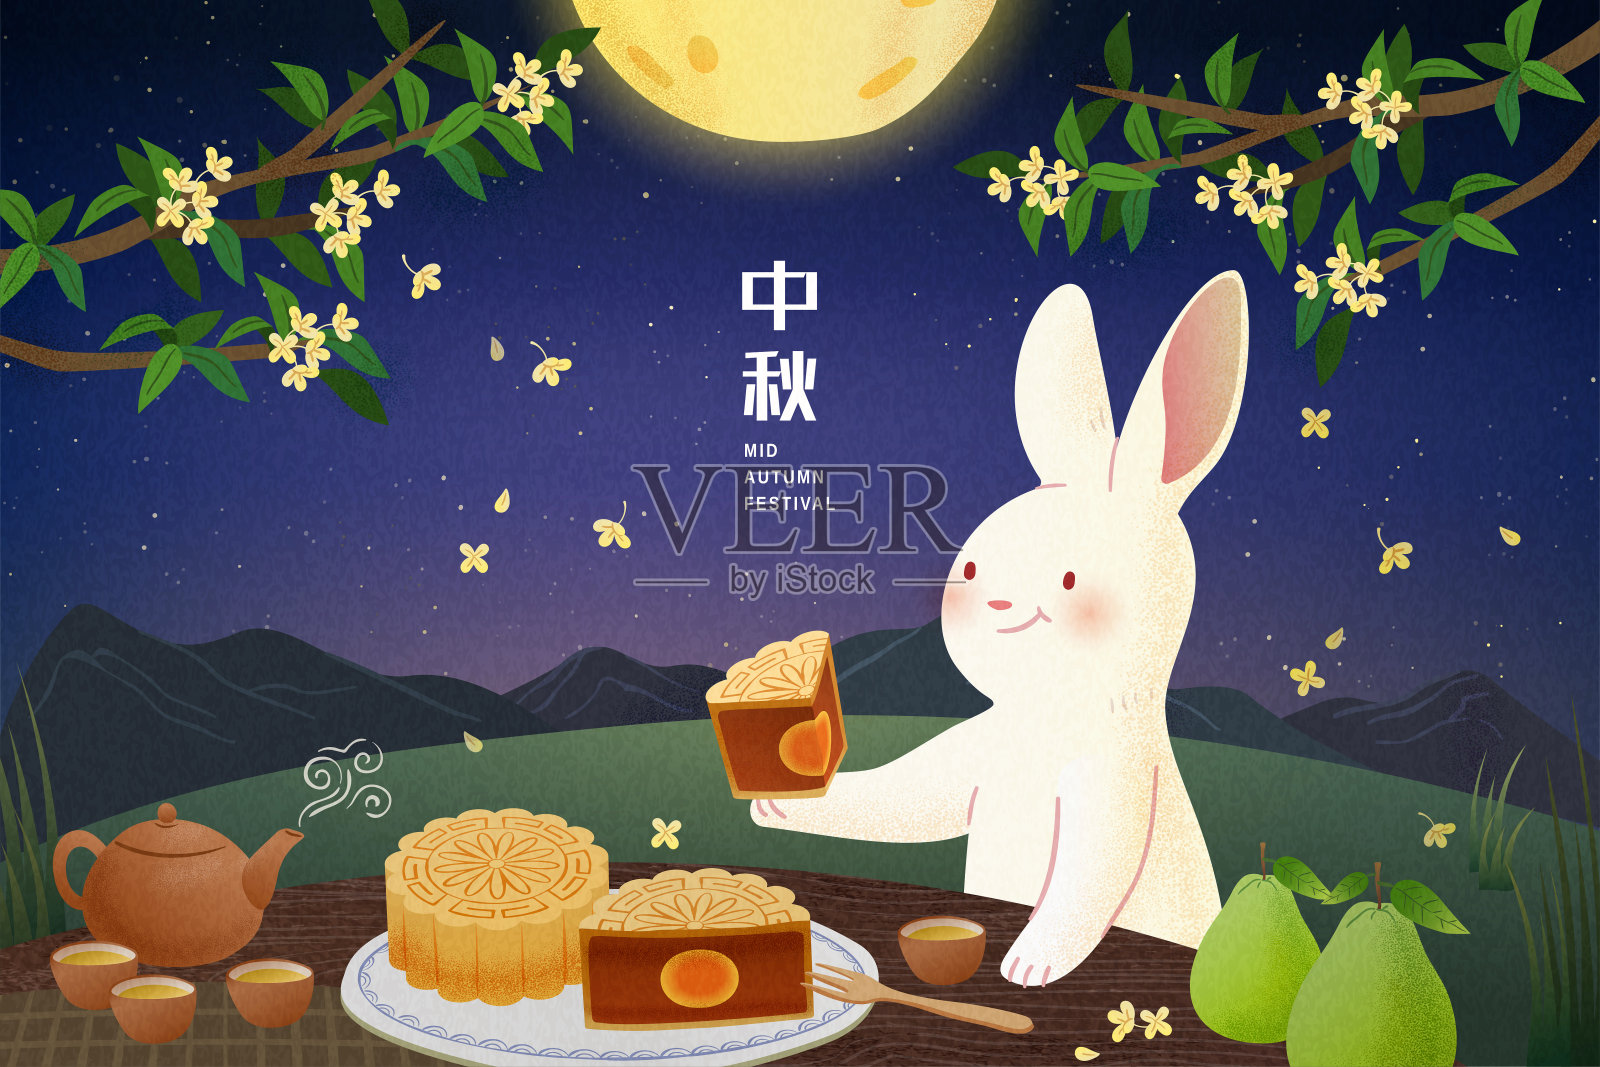 中秋满月下享用月饼的兔子插图设计模板素材